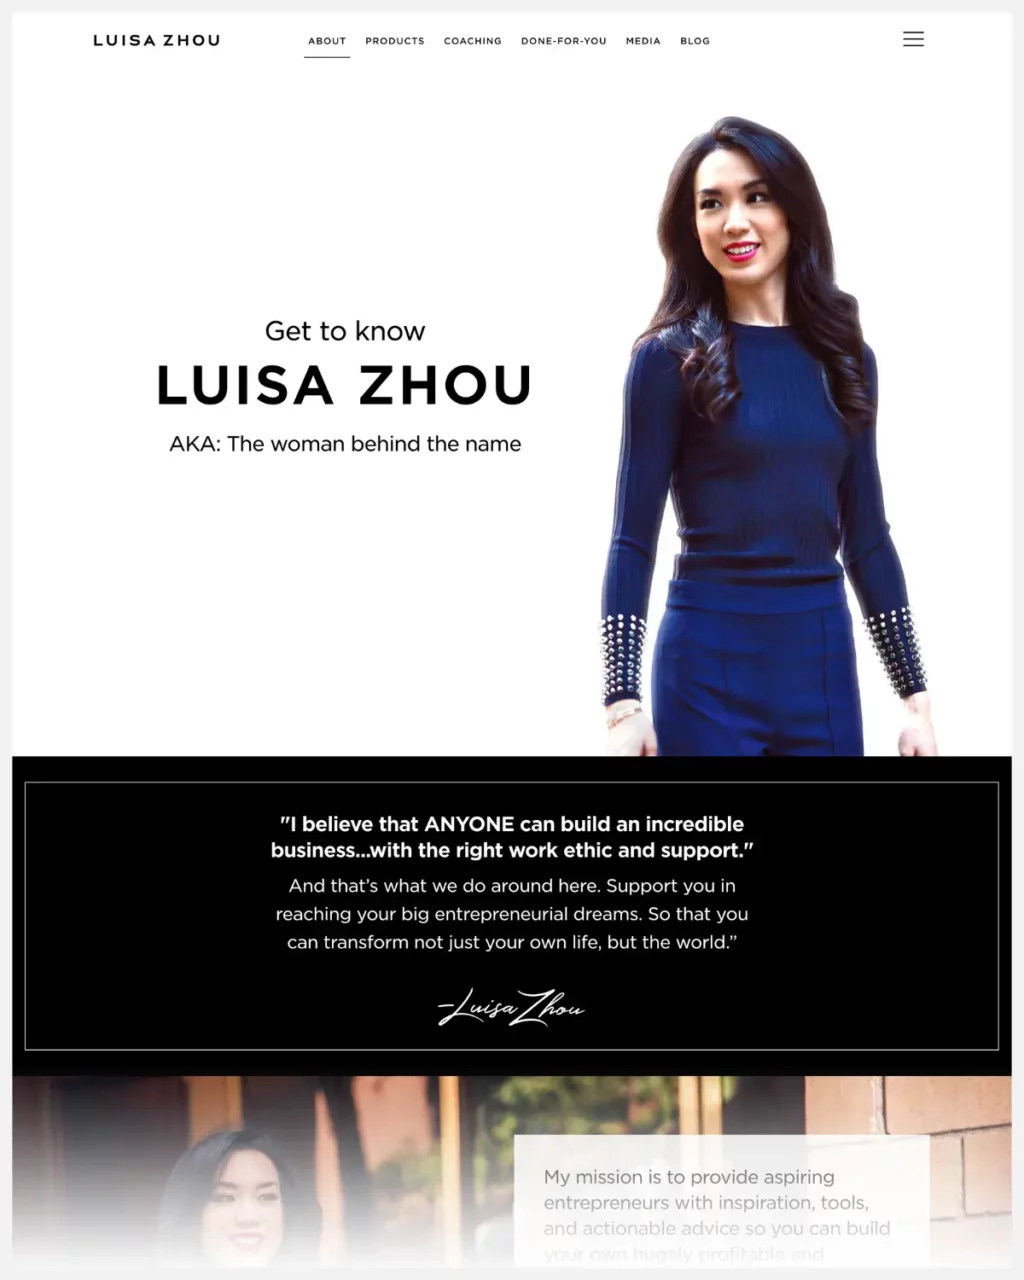 Luisa Zhou about page